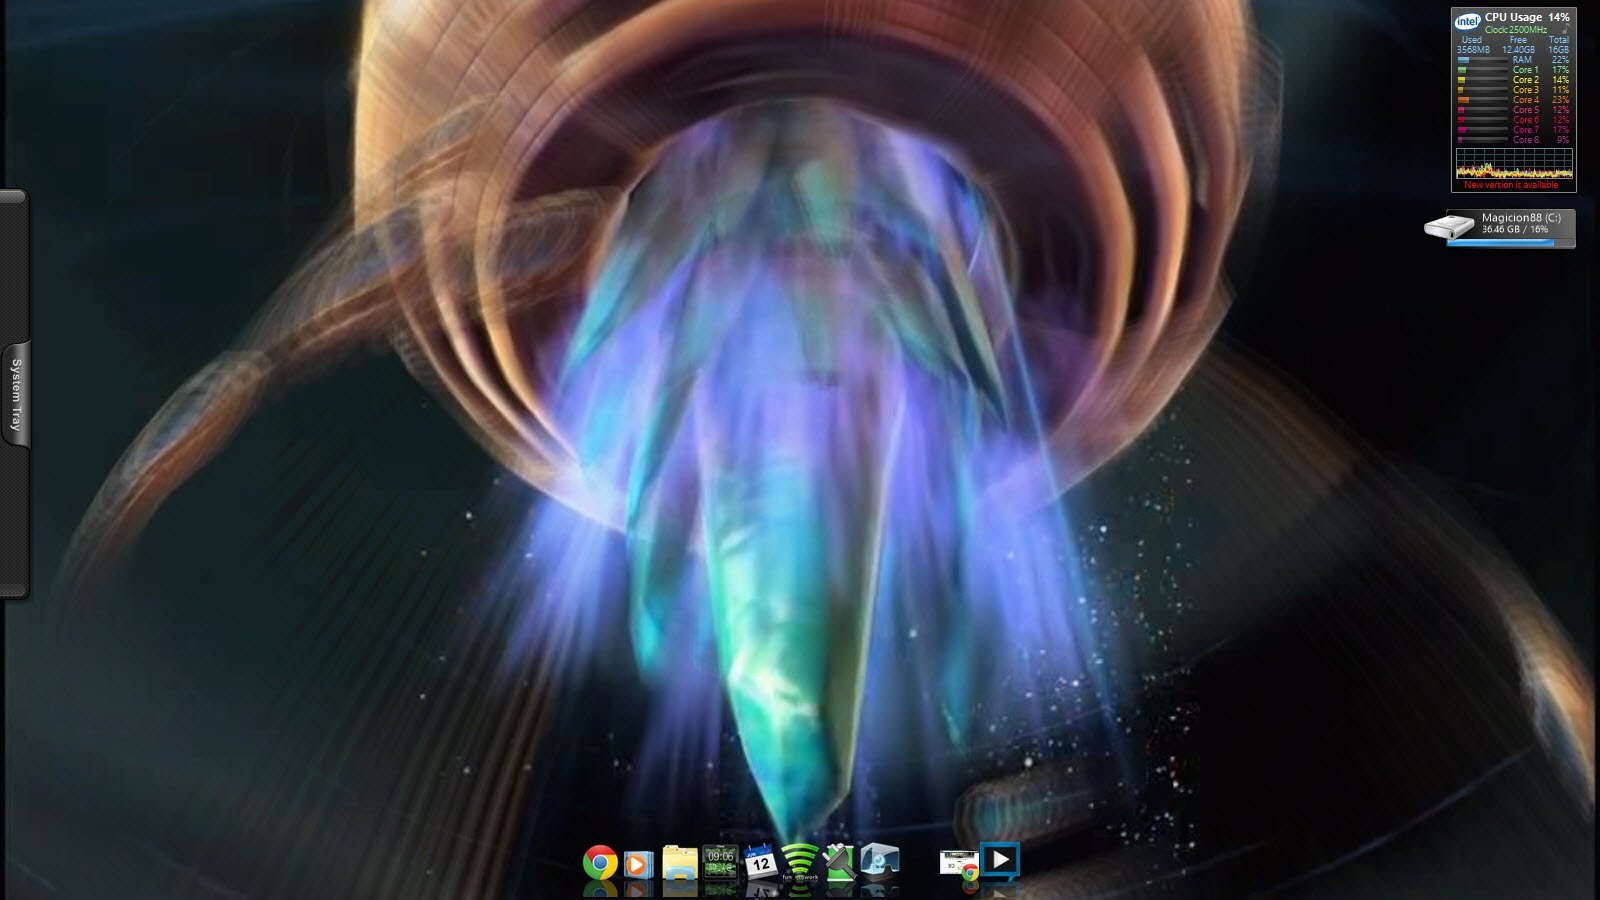 Moving Desktop Backgrounds Windows 8.1